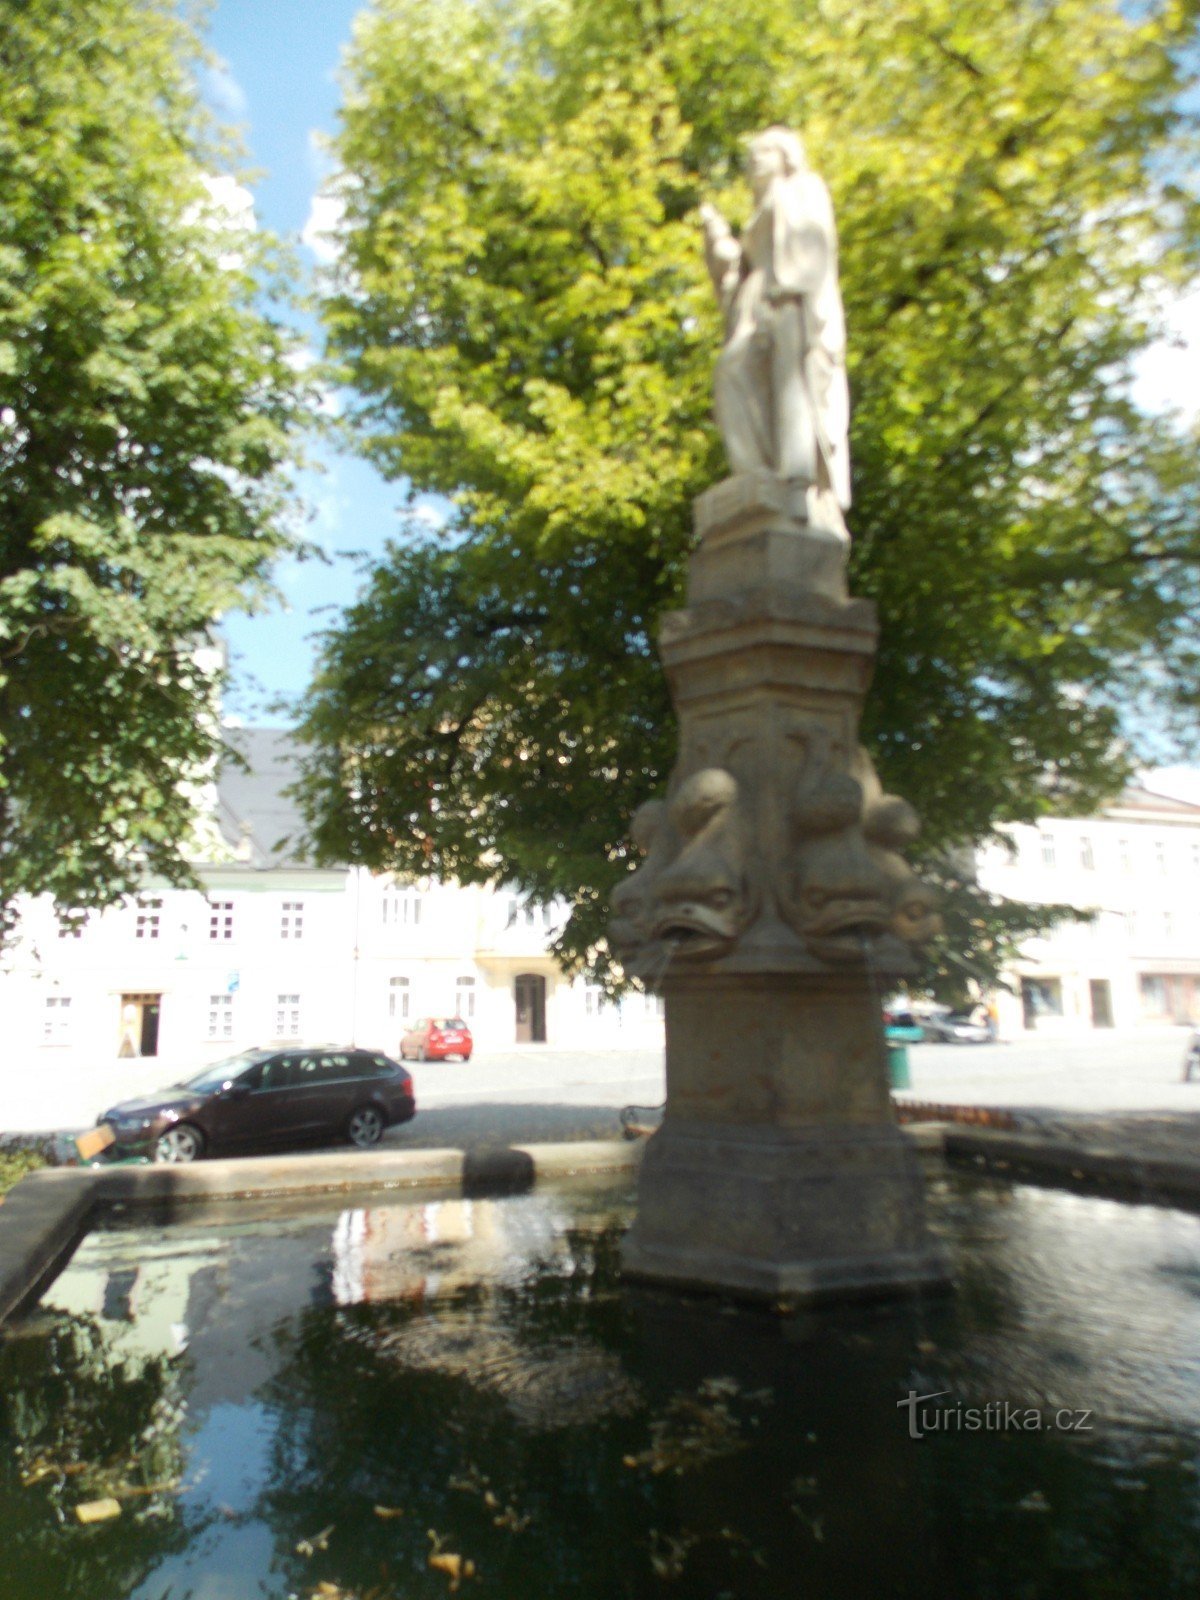 A szökőkút a Velké náměstí-n, Králíky városában